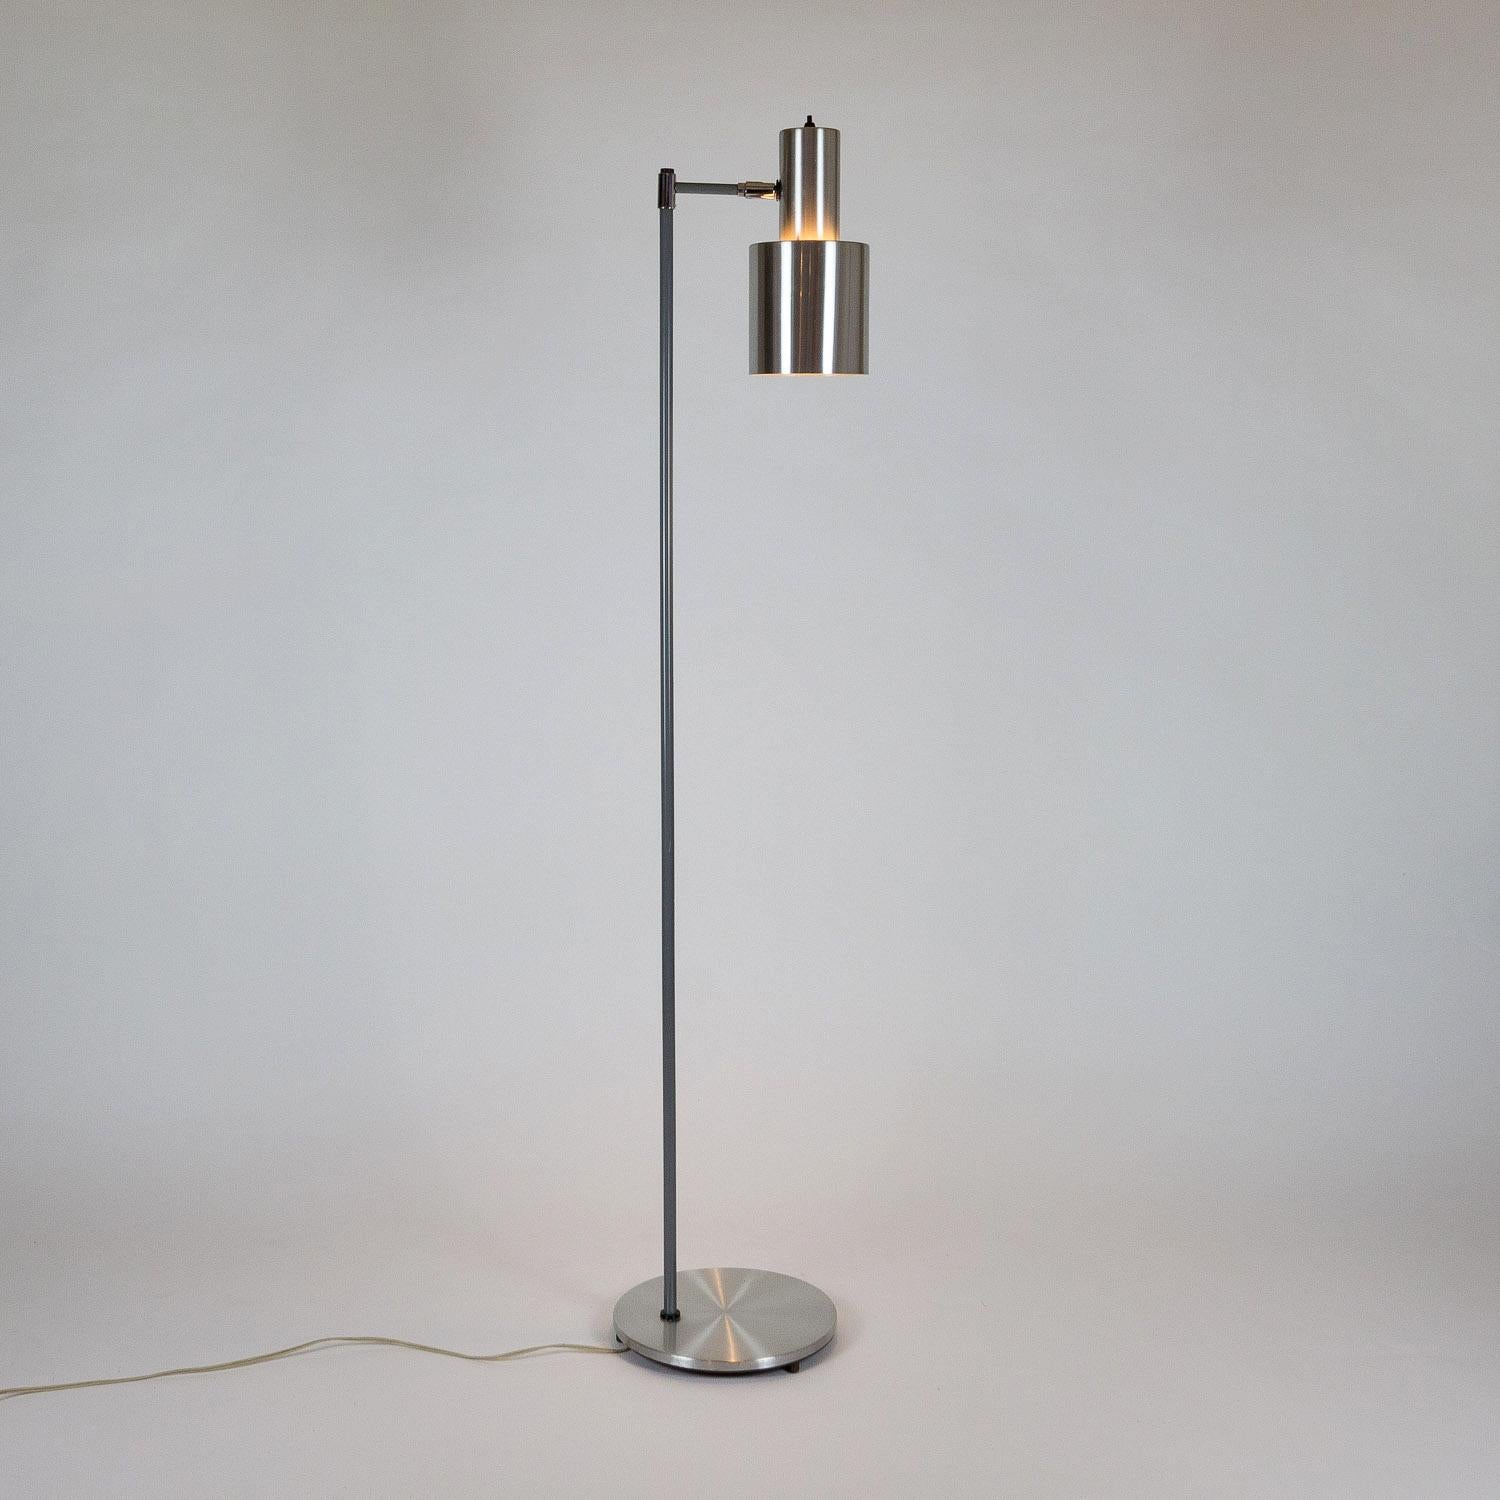 Mid-20th Century Studio Floor Lamp by Jo Hammerborg, Fog & Mørup, Denmark, 1960s